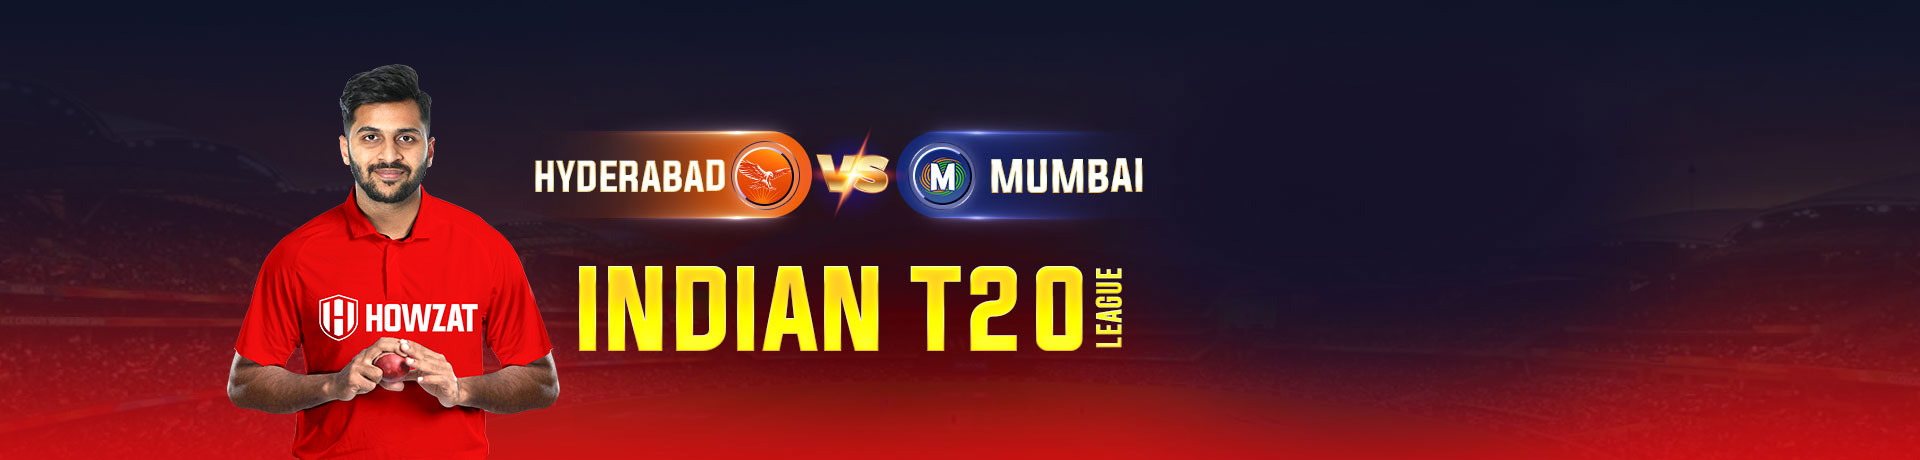 Hyderabad vs MumbaiIndian T20 League